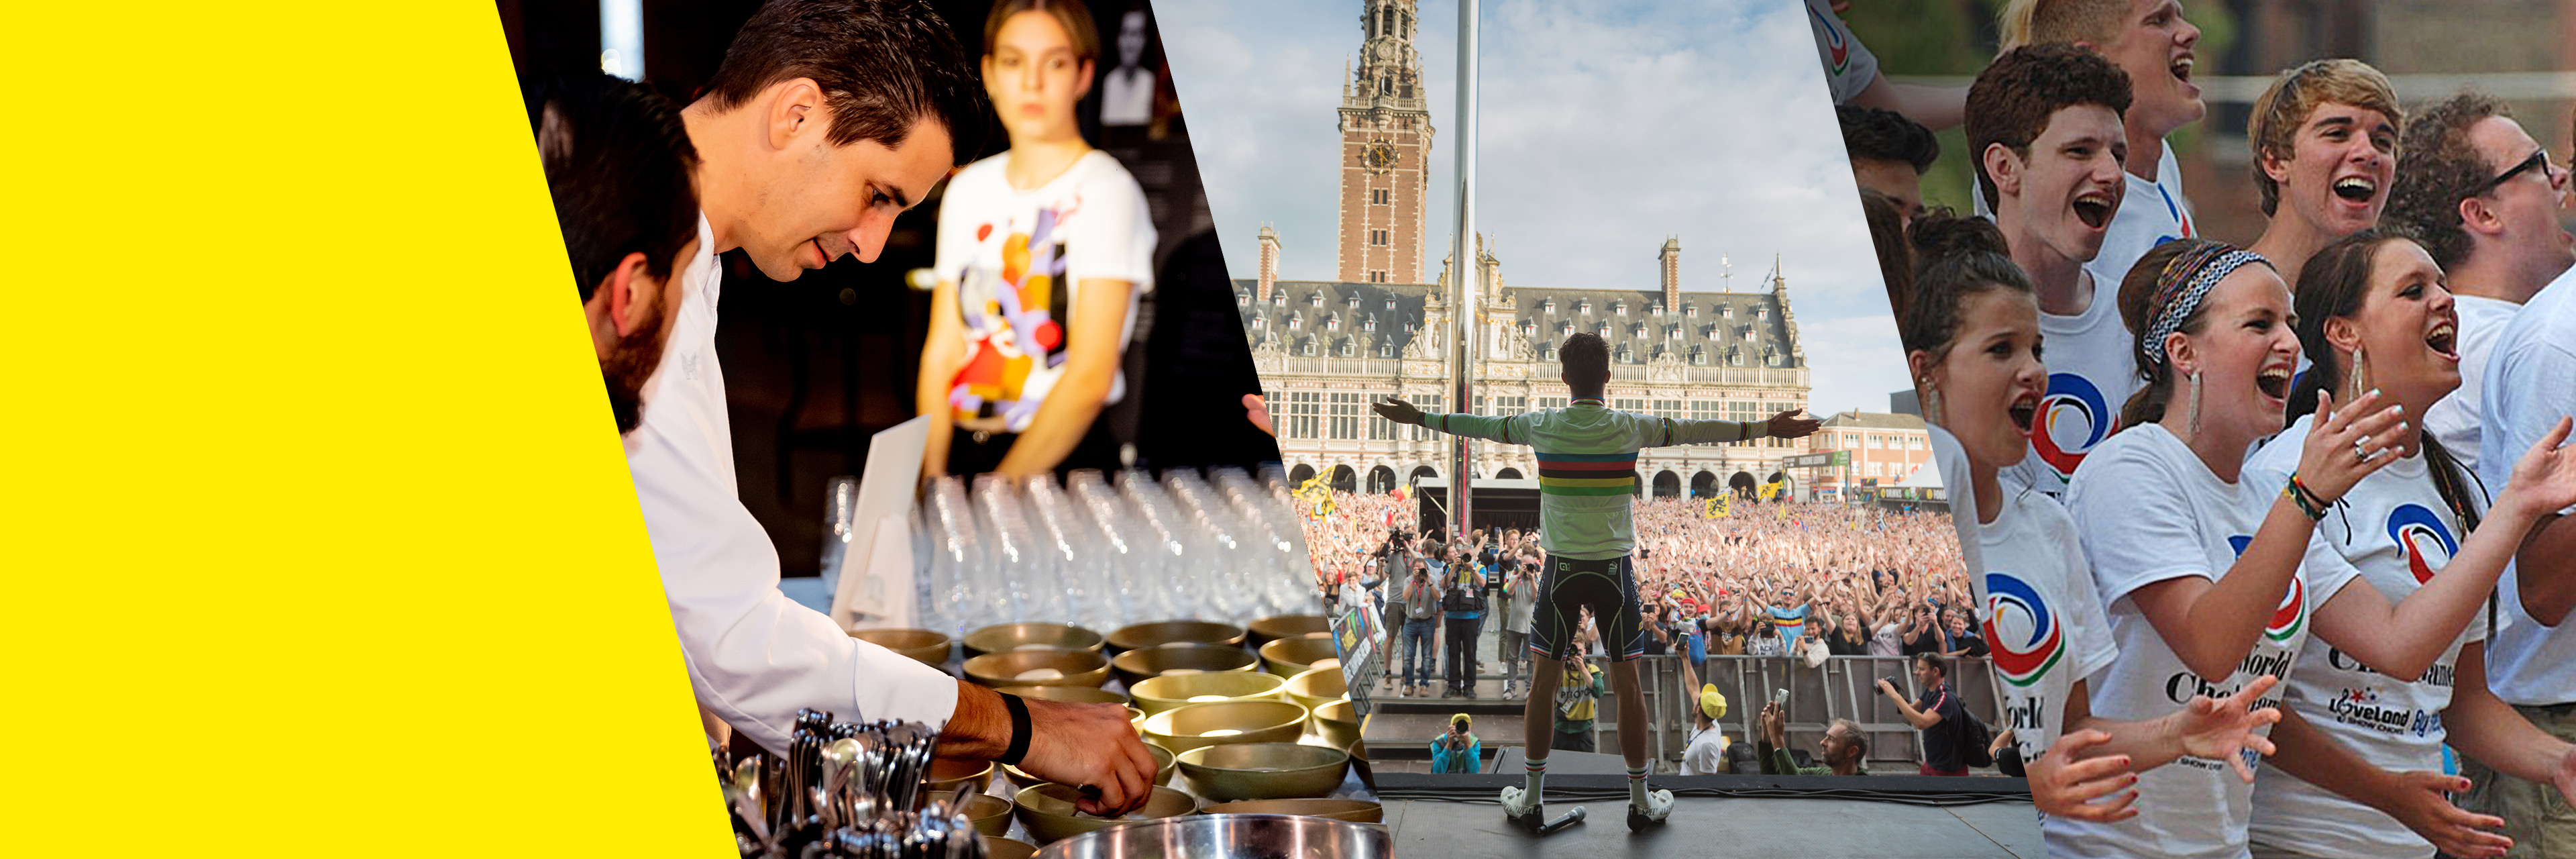 Drie topevenementen die EventFlanders ondersteunde: het Flanders Food Festival, het WK Wielrennen en de World Choir Games